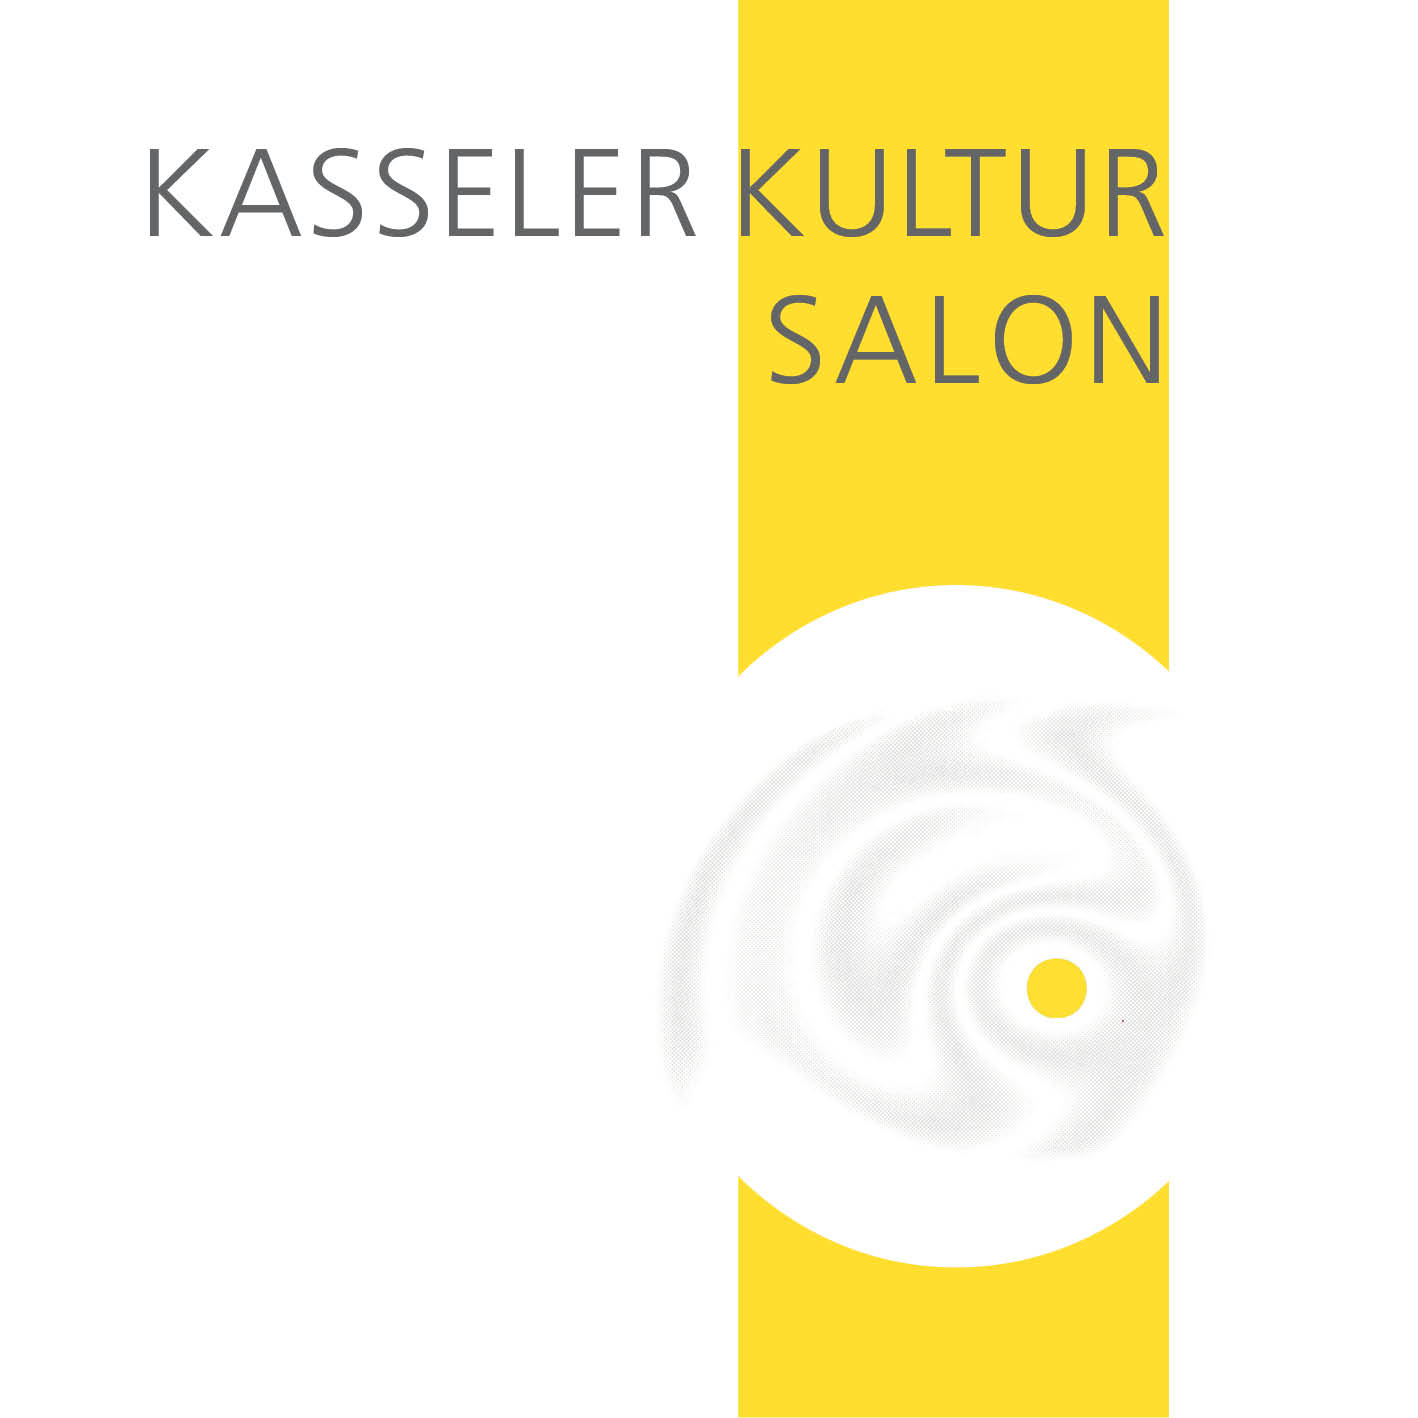 Kasseler Kultur Salon